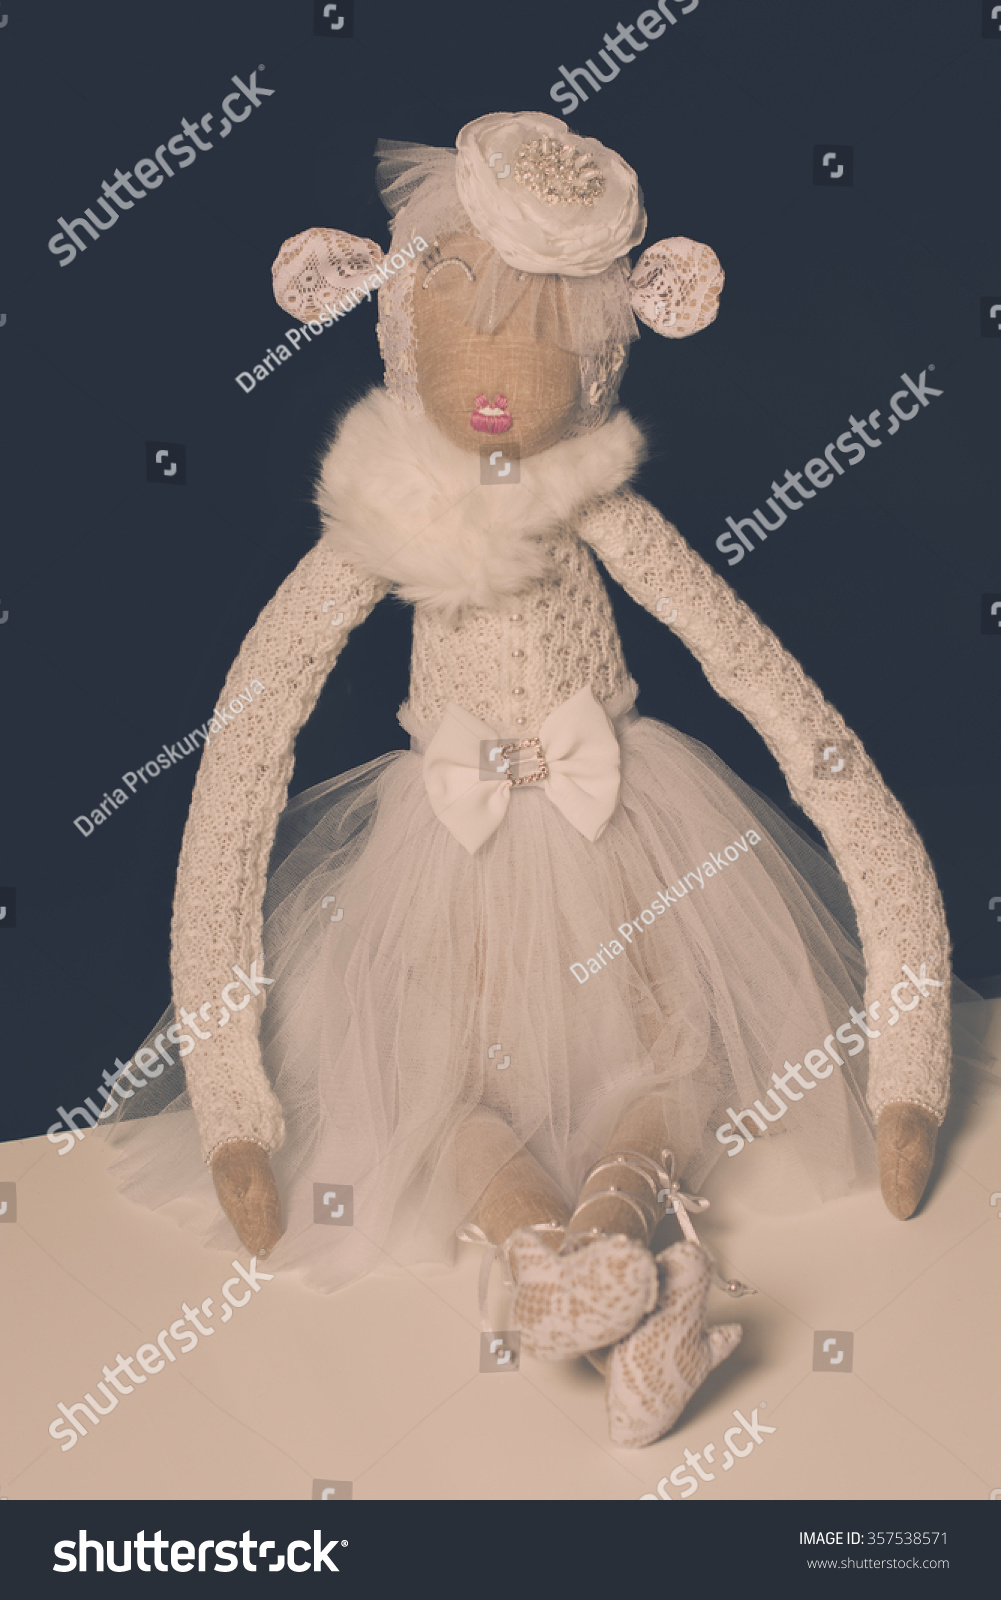 Fluffy Toy Glamorous Ballet Monkey Tutu Stock Photo Edit Now 357538571